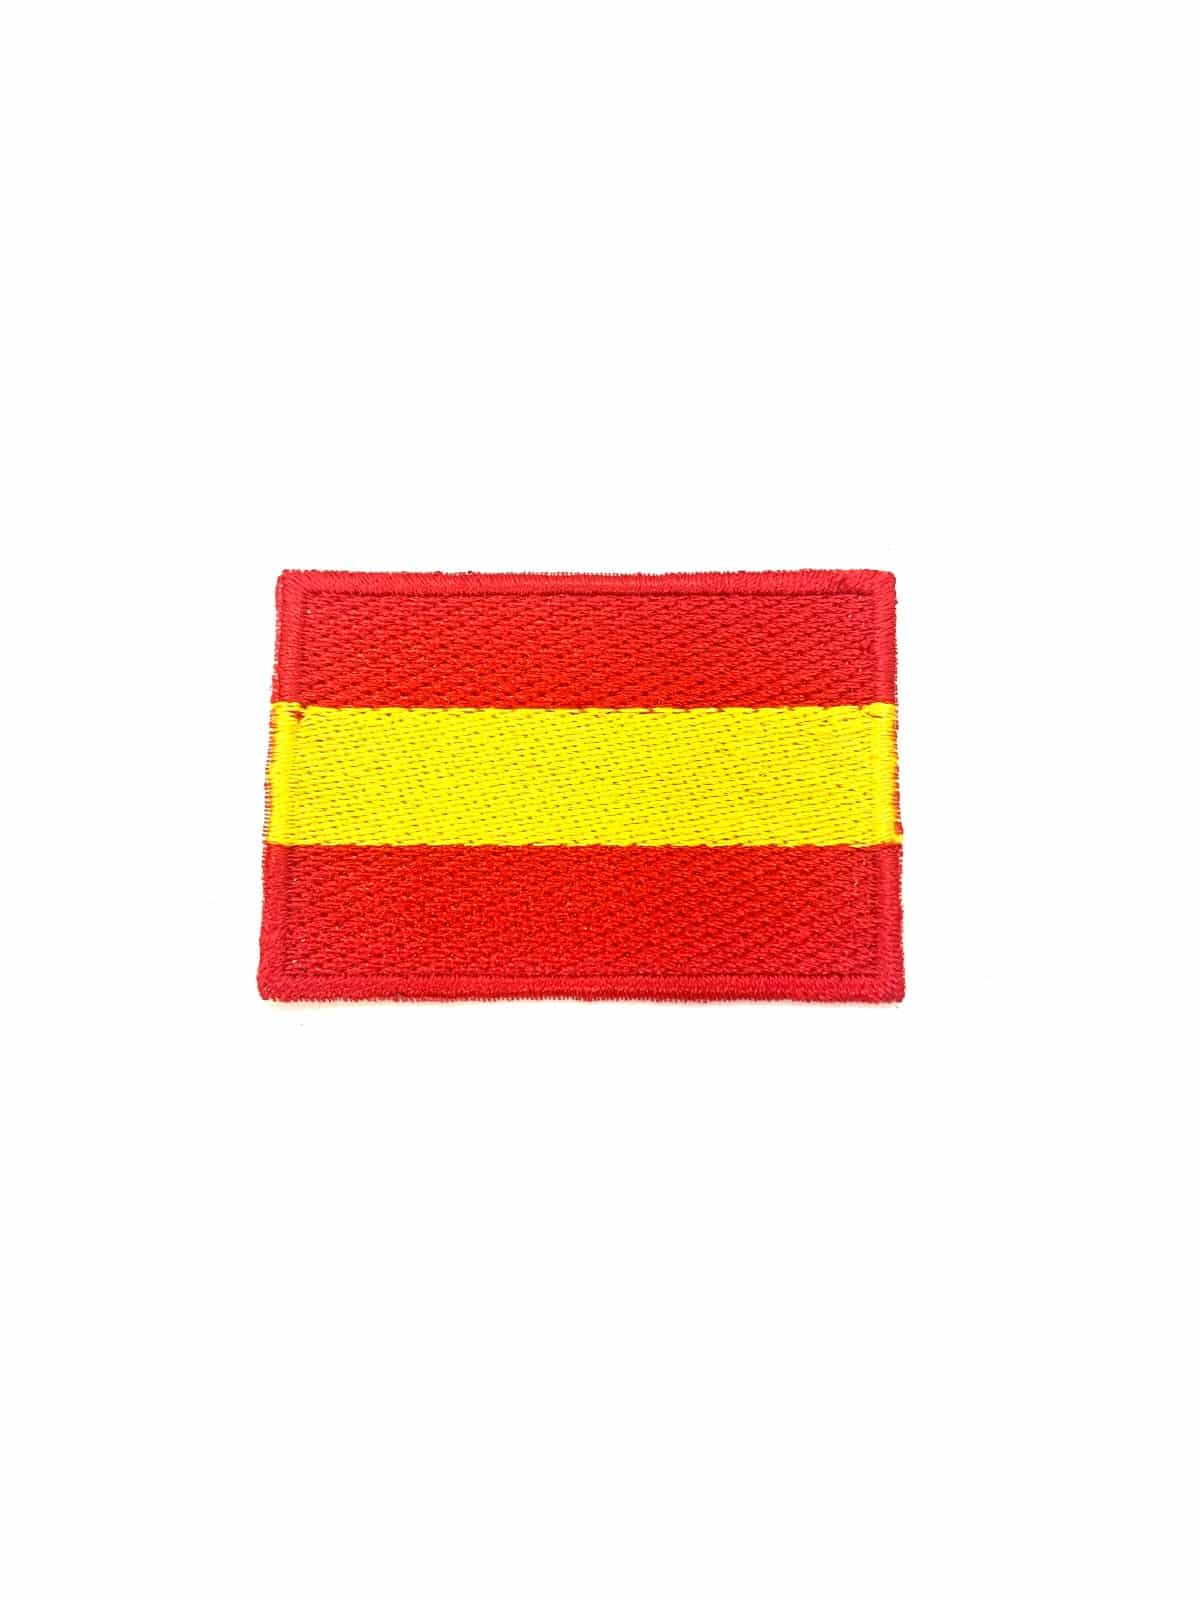 Parche bandera España trazo blanco 6 cm